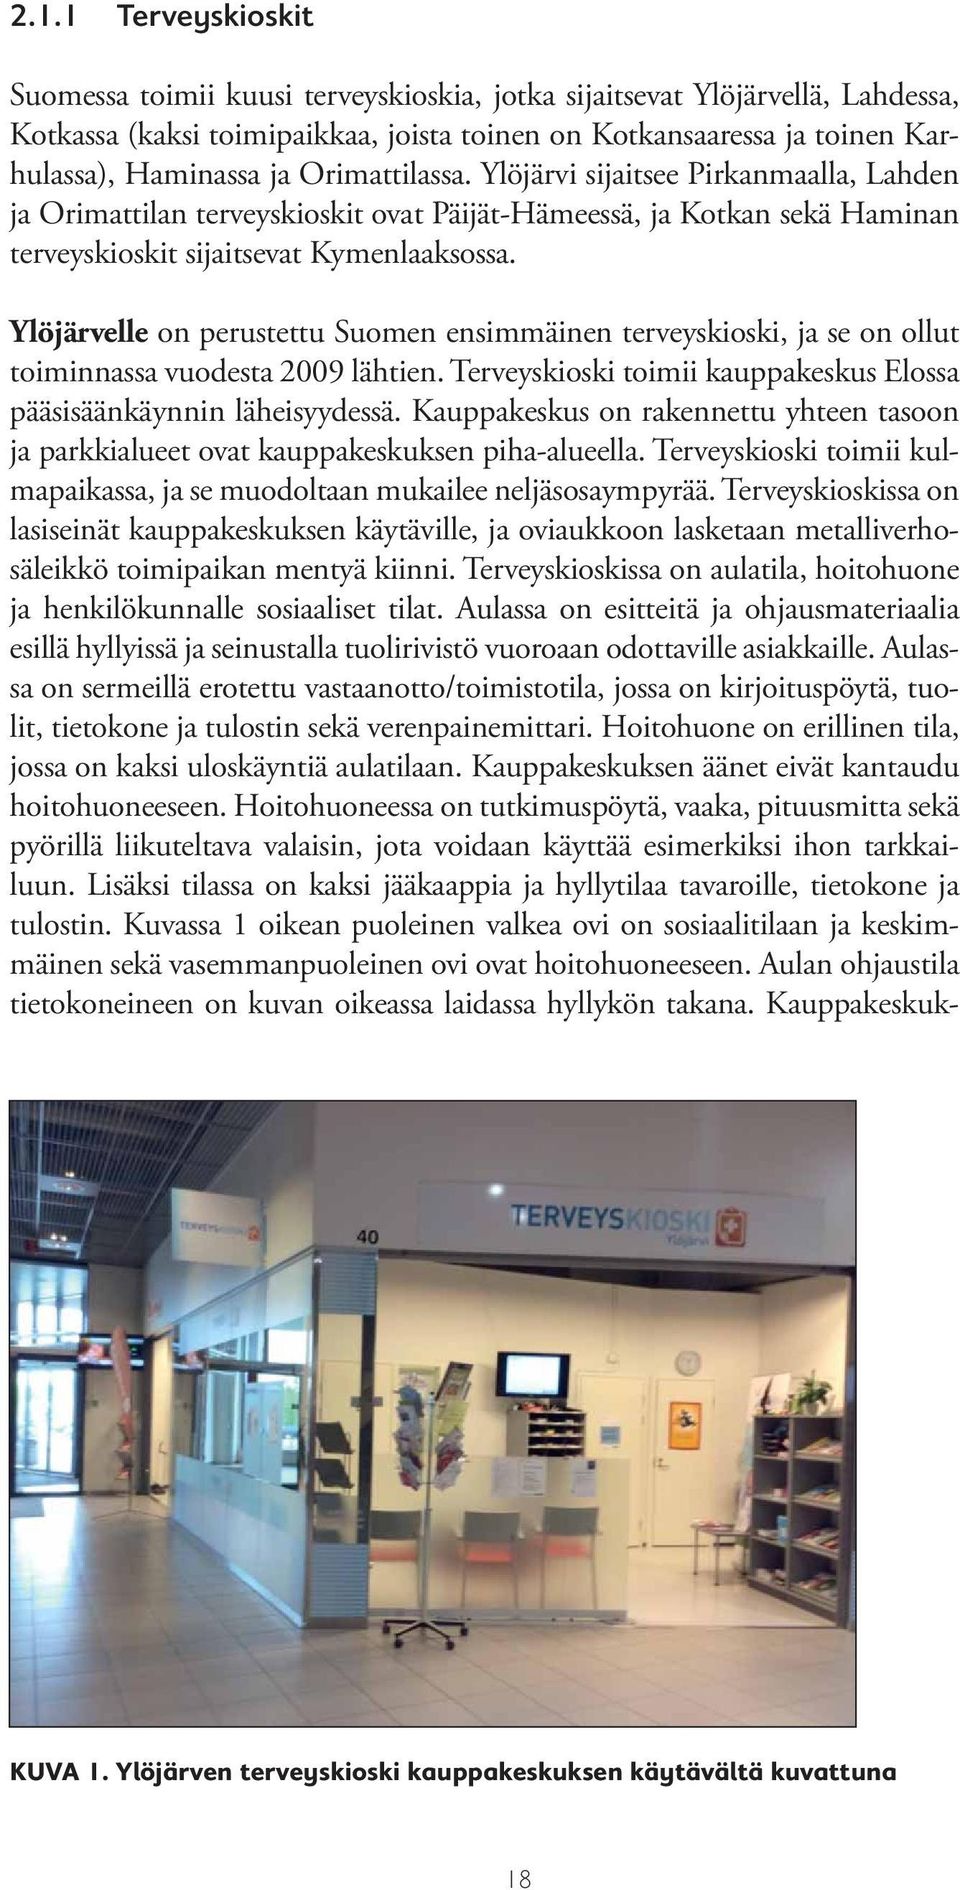 Ylöjärvelle on perustettu Suomen ensimmäinen terveyskioski, ja se on ollut toiminnassa vuodesta 2009 lähtien. Terveyskioski toimii kauppakeskus Elossa pääsisäänkäynnin läheisyydessä.